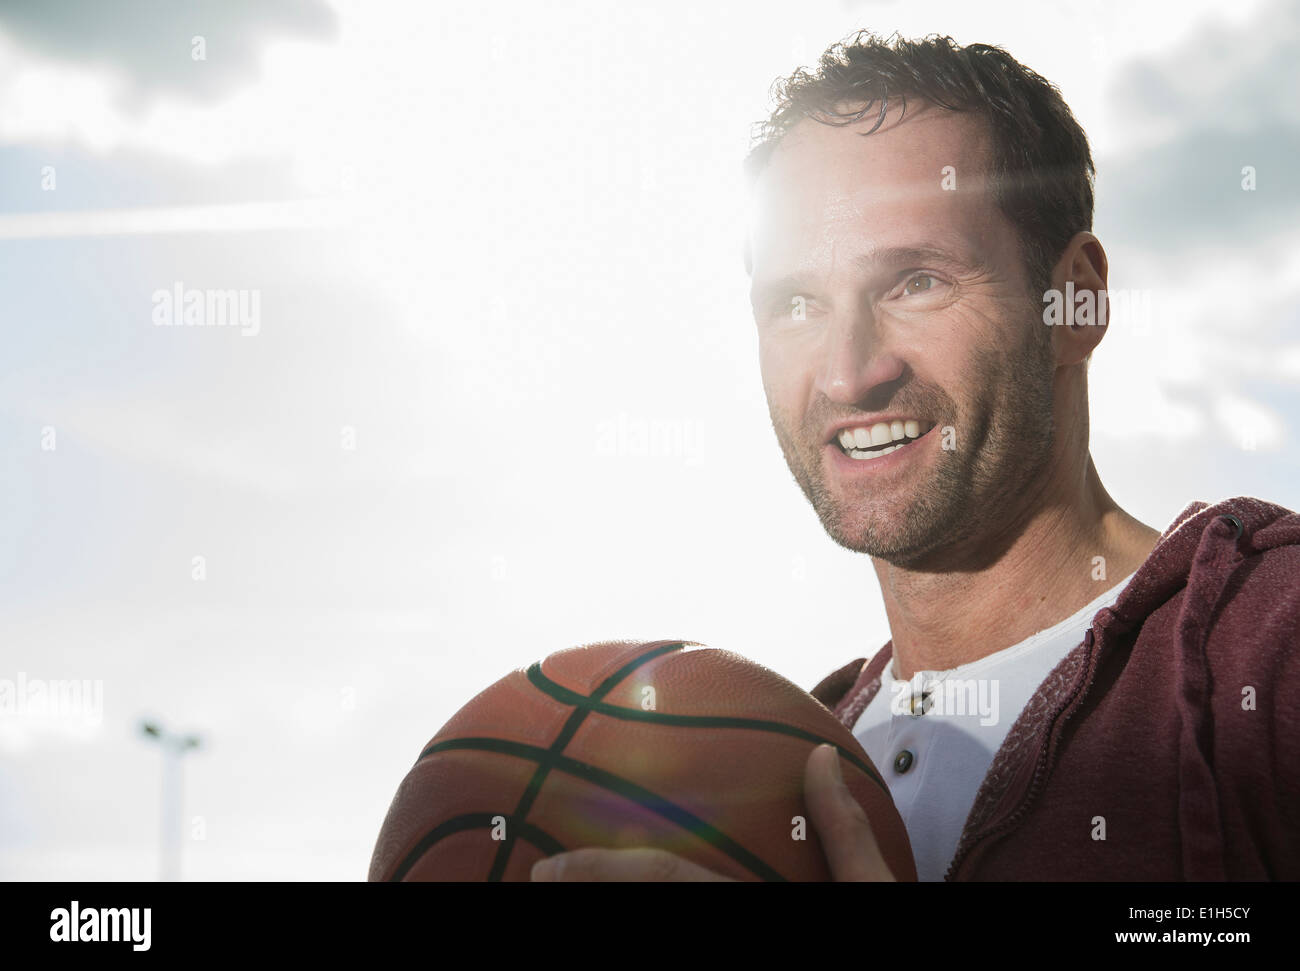 Basketball player holding basketball Stock Photo